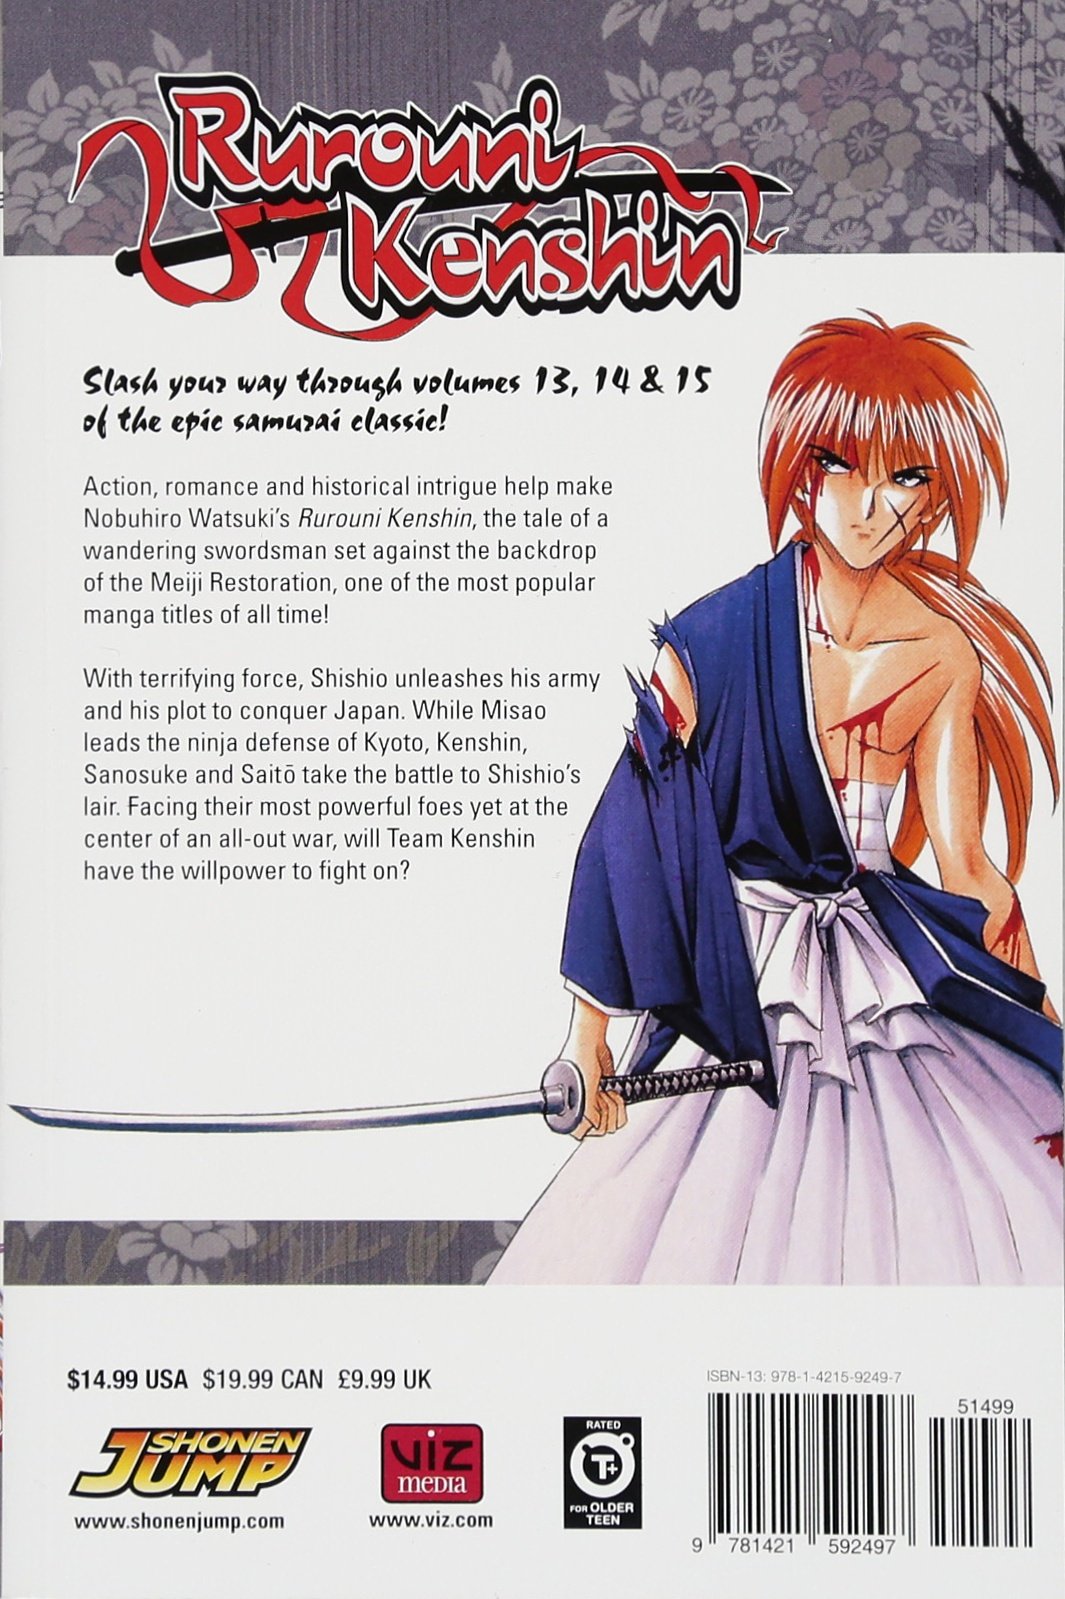 Rurouni Kenshin Volume 1314 And 15 3 In 1 Edition Nobuhiro Watsuki 